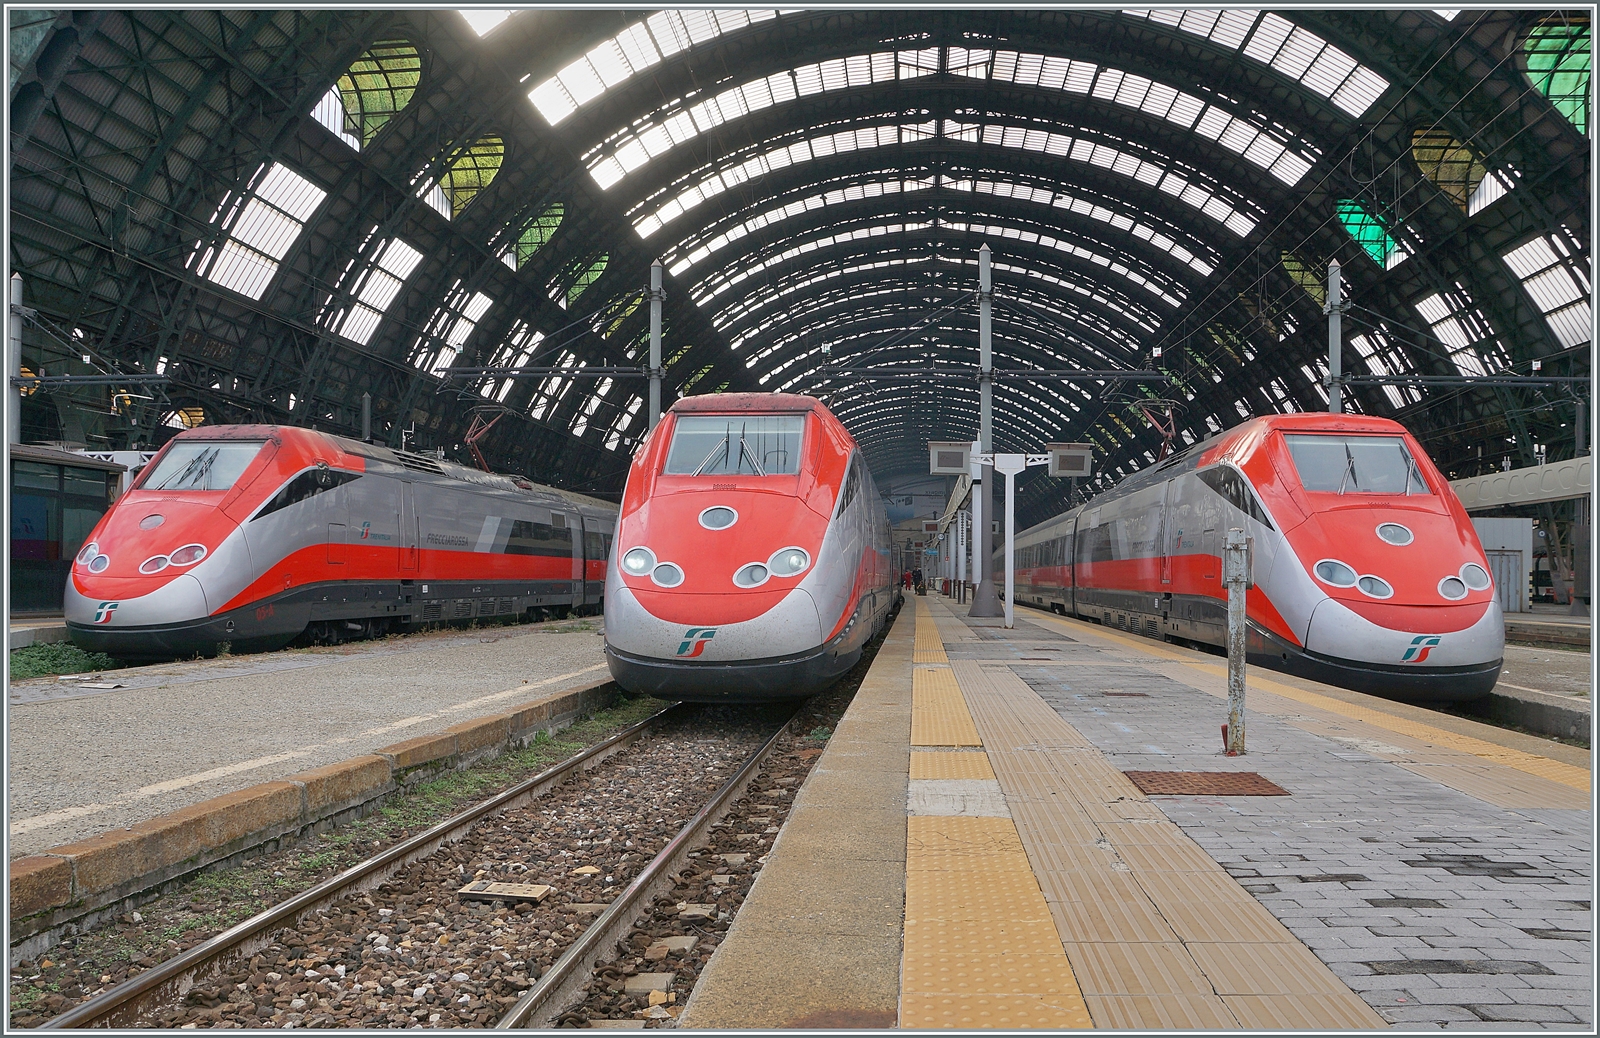 Gleich drei FS Trenitalia ETR 500  Frecciarossa  stehen im Bahnhof von Milano Centrale. Die FS Trenitalia besitzt 90 ETR 500  Politensione  Triebköpfe, so dass damit 45 Züge gebildet werden können, welche zur Zeit auf praktisch allen  Freccarossa -Verbindngen eingesetzt werden. Obwohl der Zug als ETR 500 firmiert, werden, zumindest die 60 Triebköpfe der zweiten Serie als E 404 501 - 560 beschriftet. 

8. November 2022